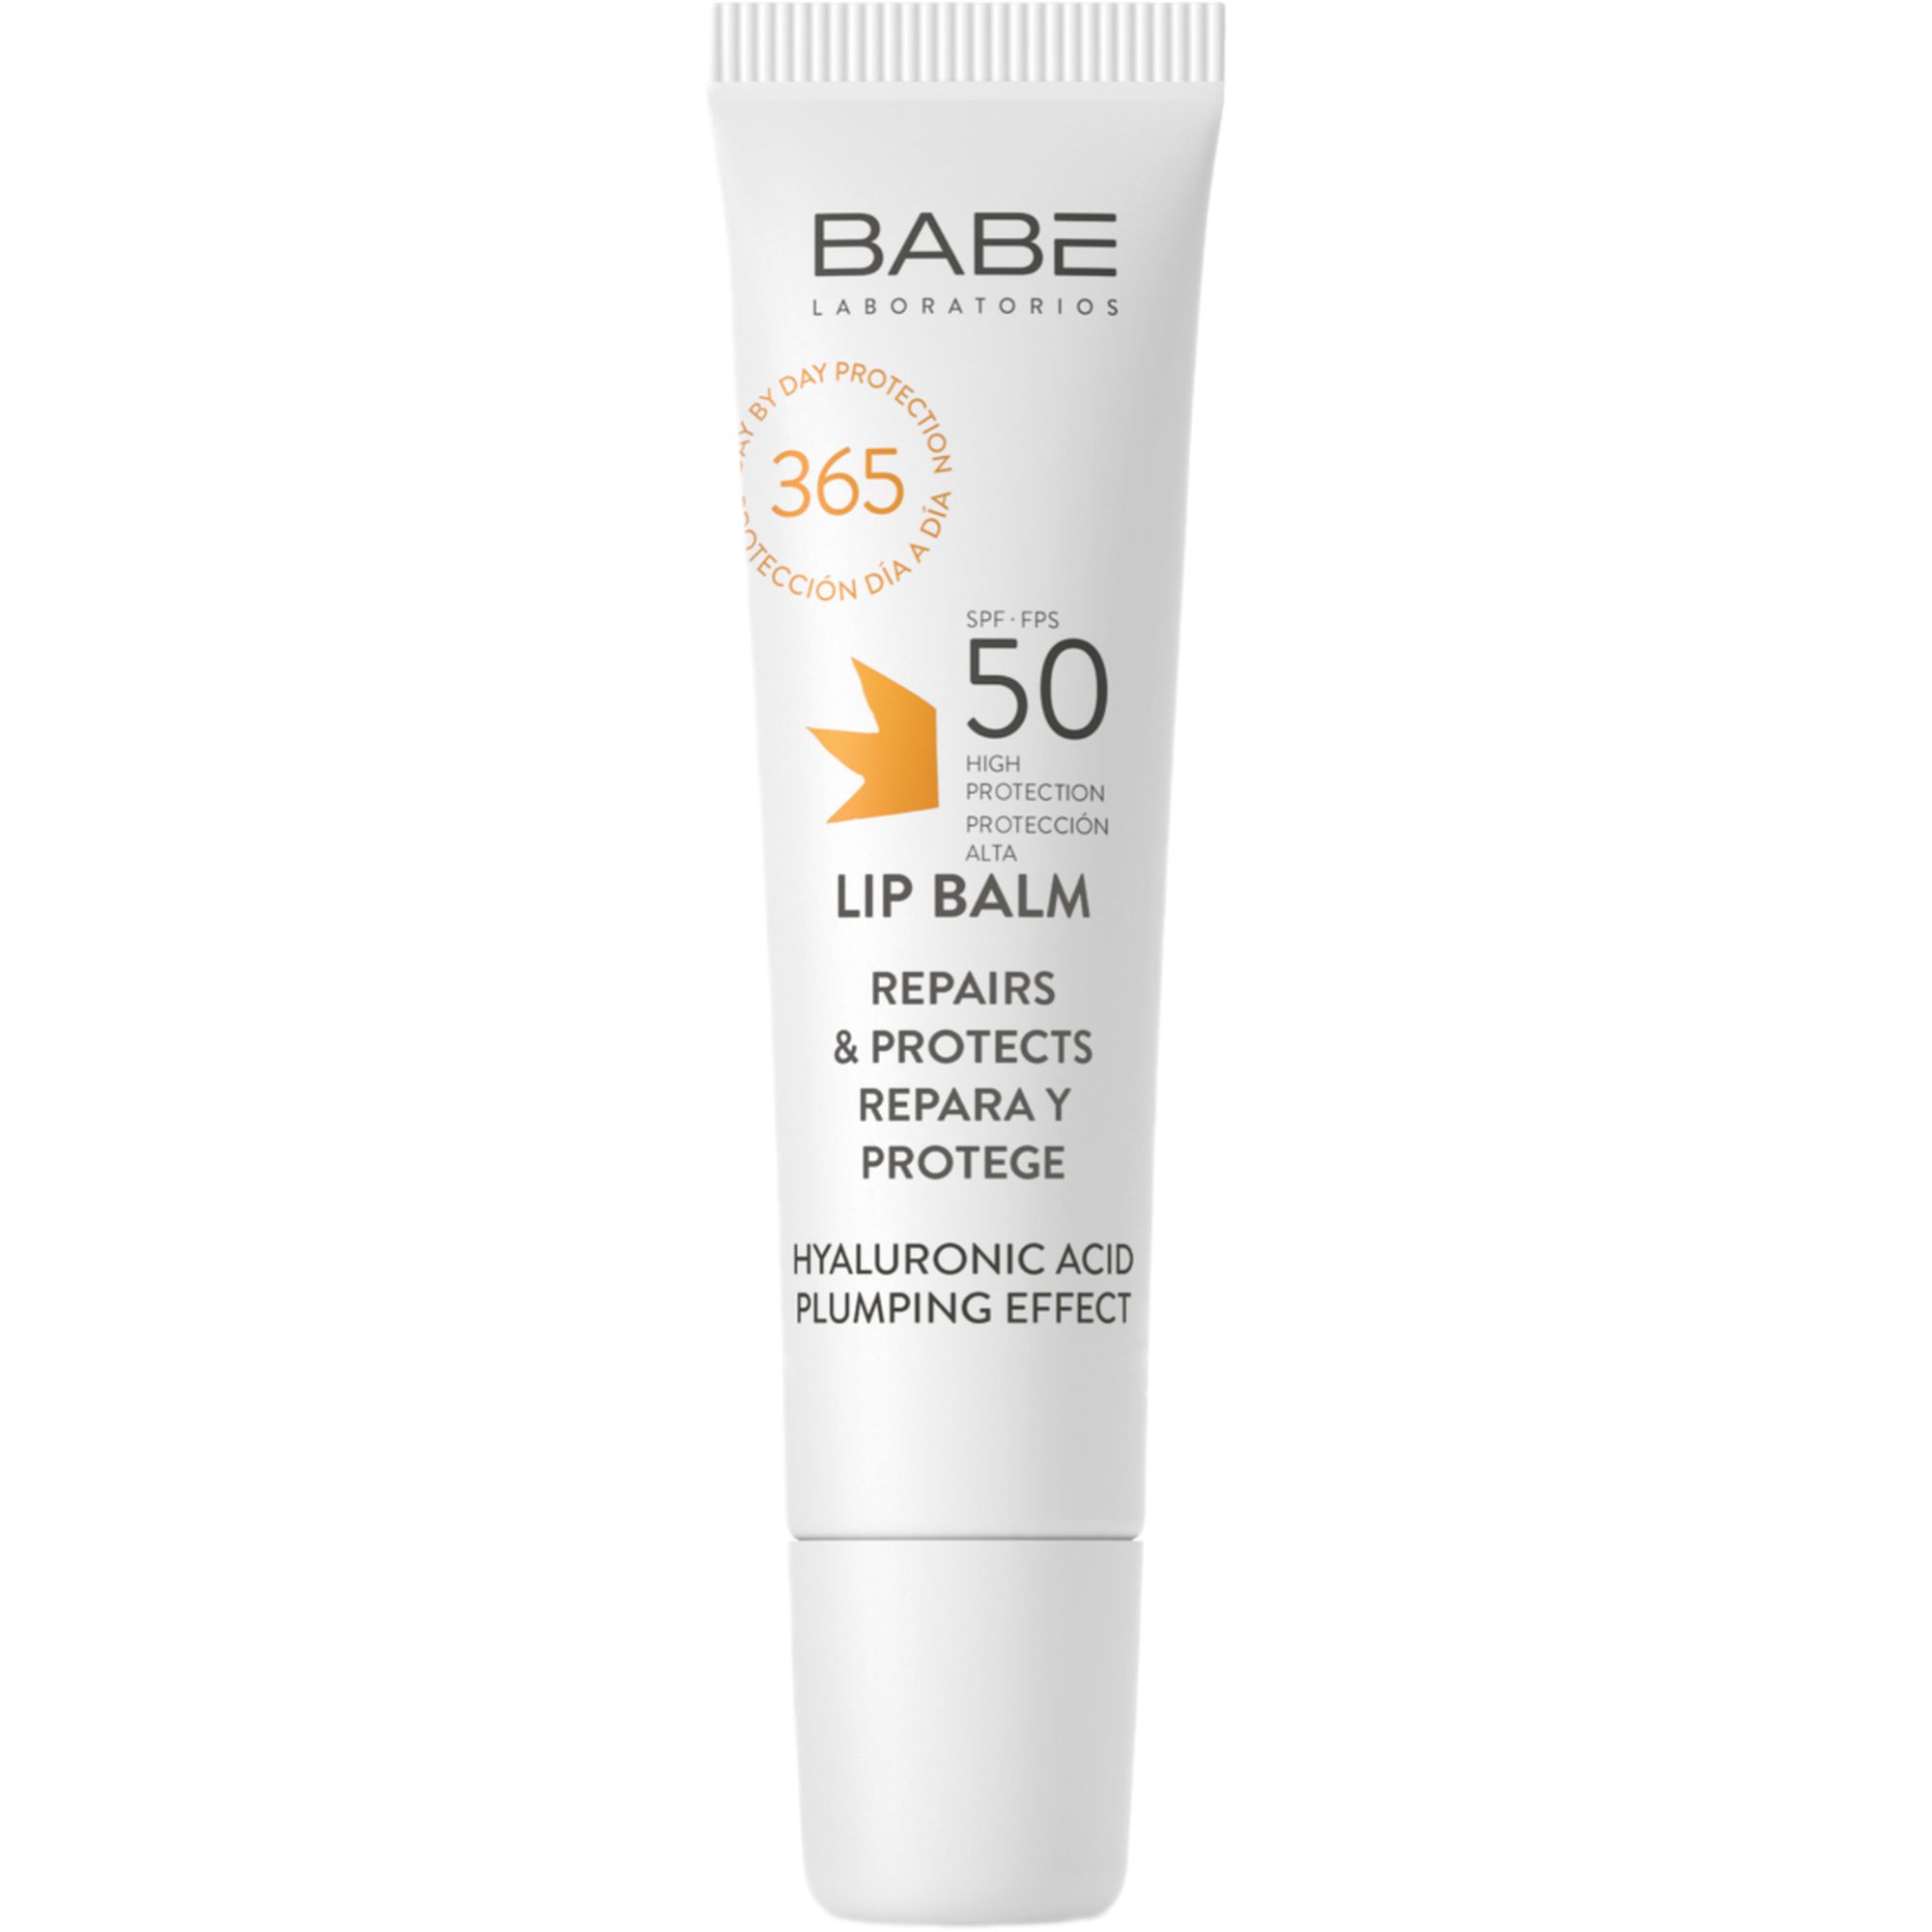 Сонцезахисний бальзам для губ Babe Laboratorios Sun Protection SPF 50 з гіалуроном 15 мл - фото 1